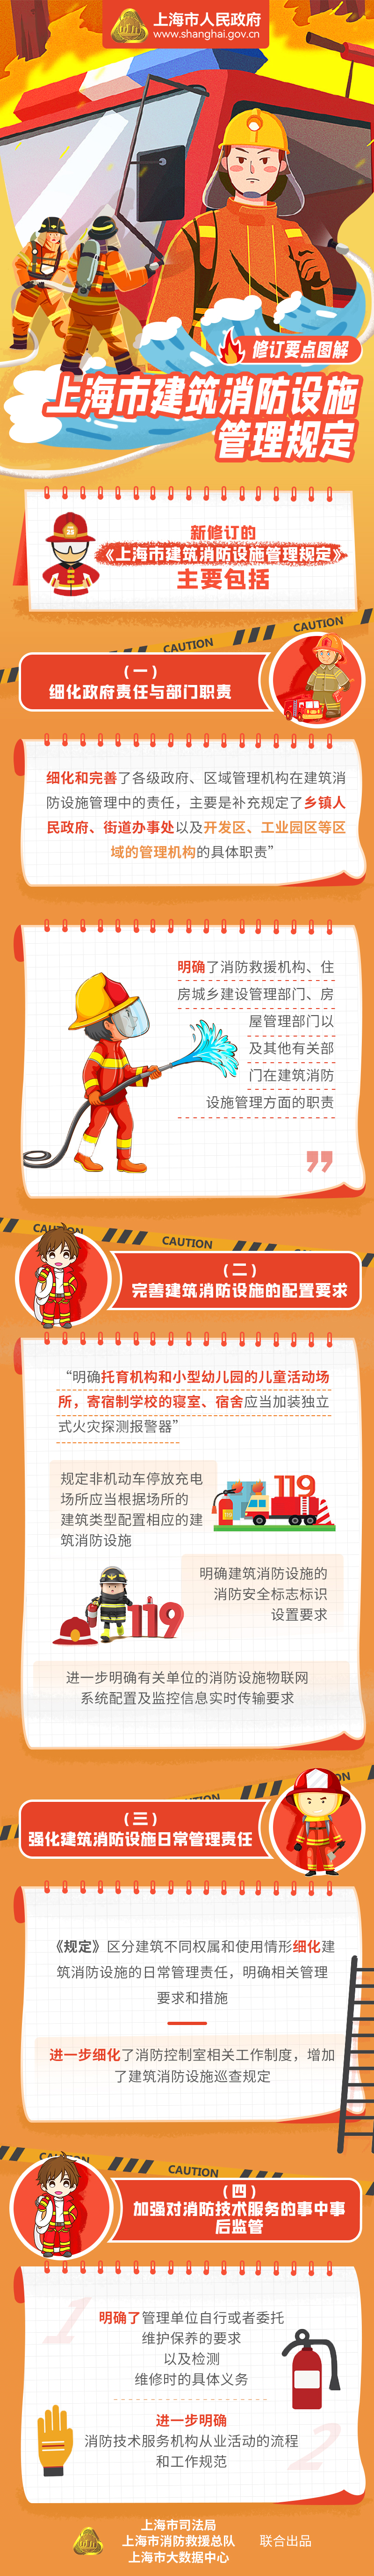 《上海市建筑消防设施管理规定》修订要点图解.jpg